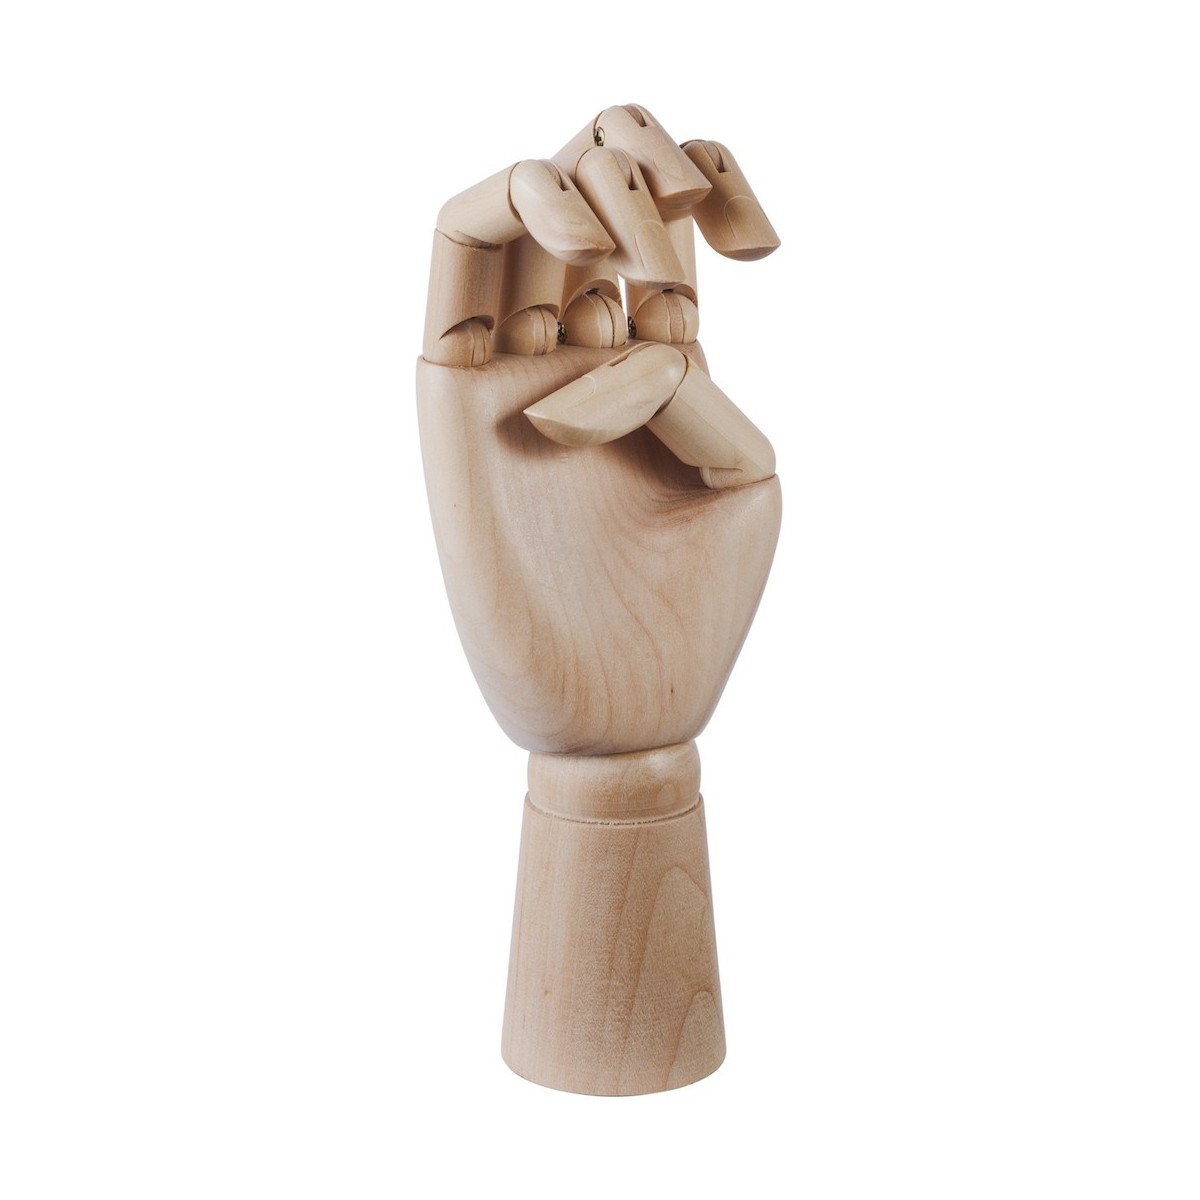 S - wooden hand